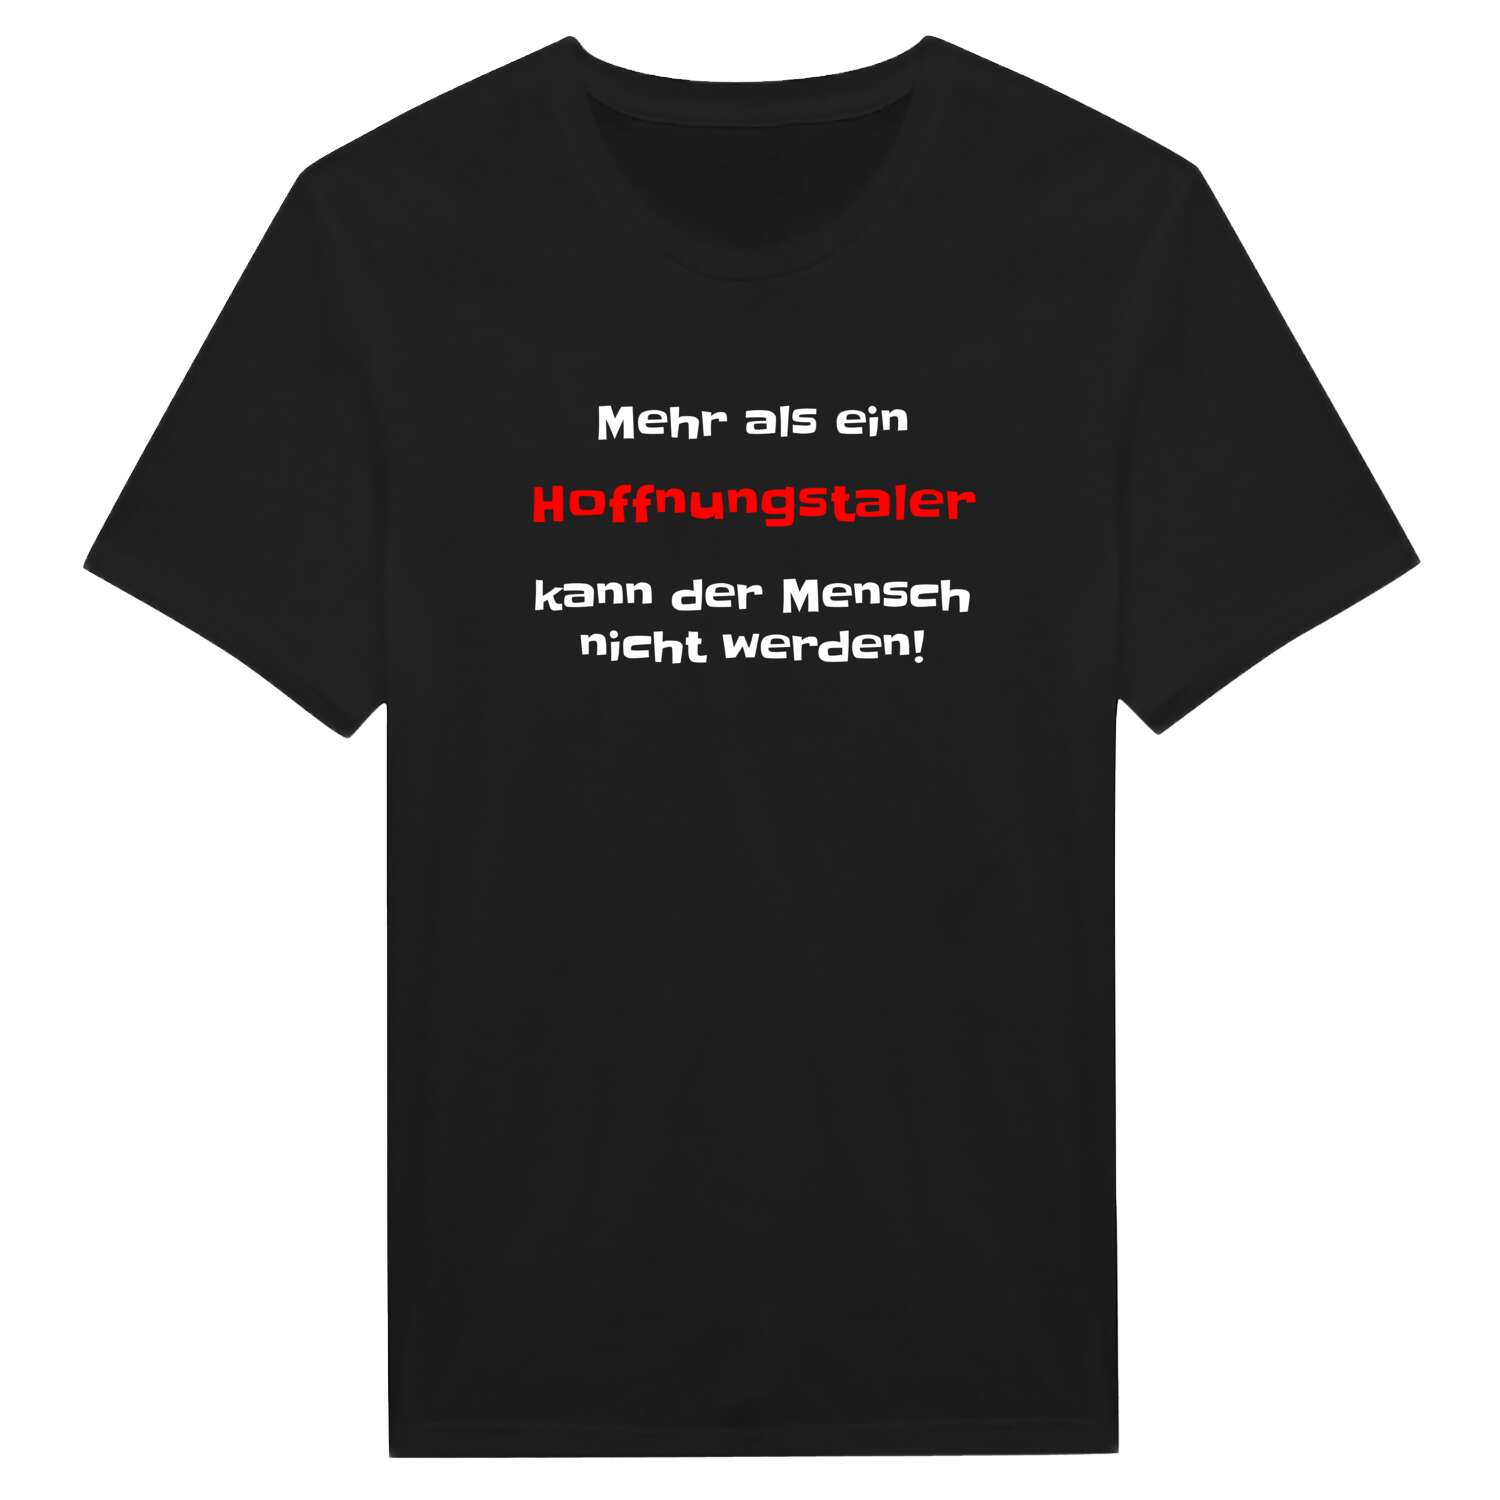 Hoffnungstal T-Shirt »Mehr als ein«